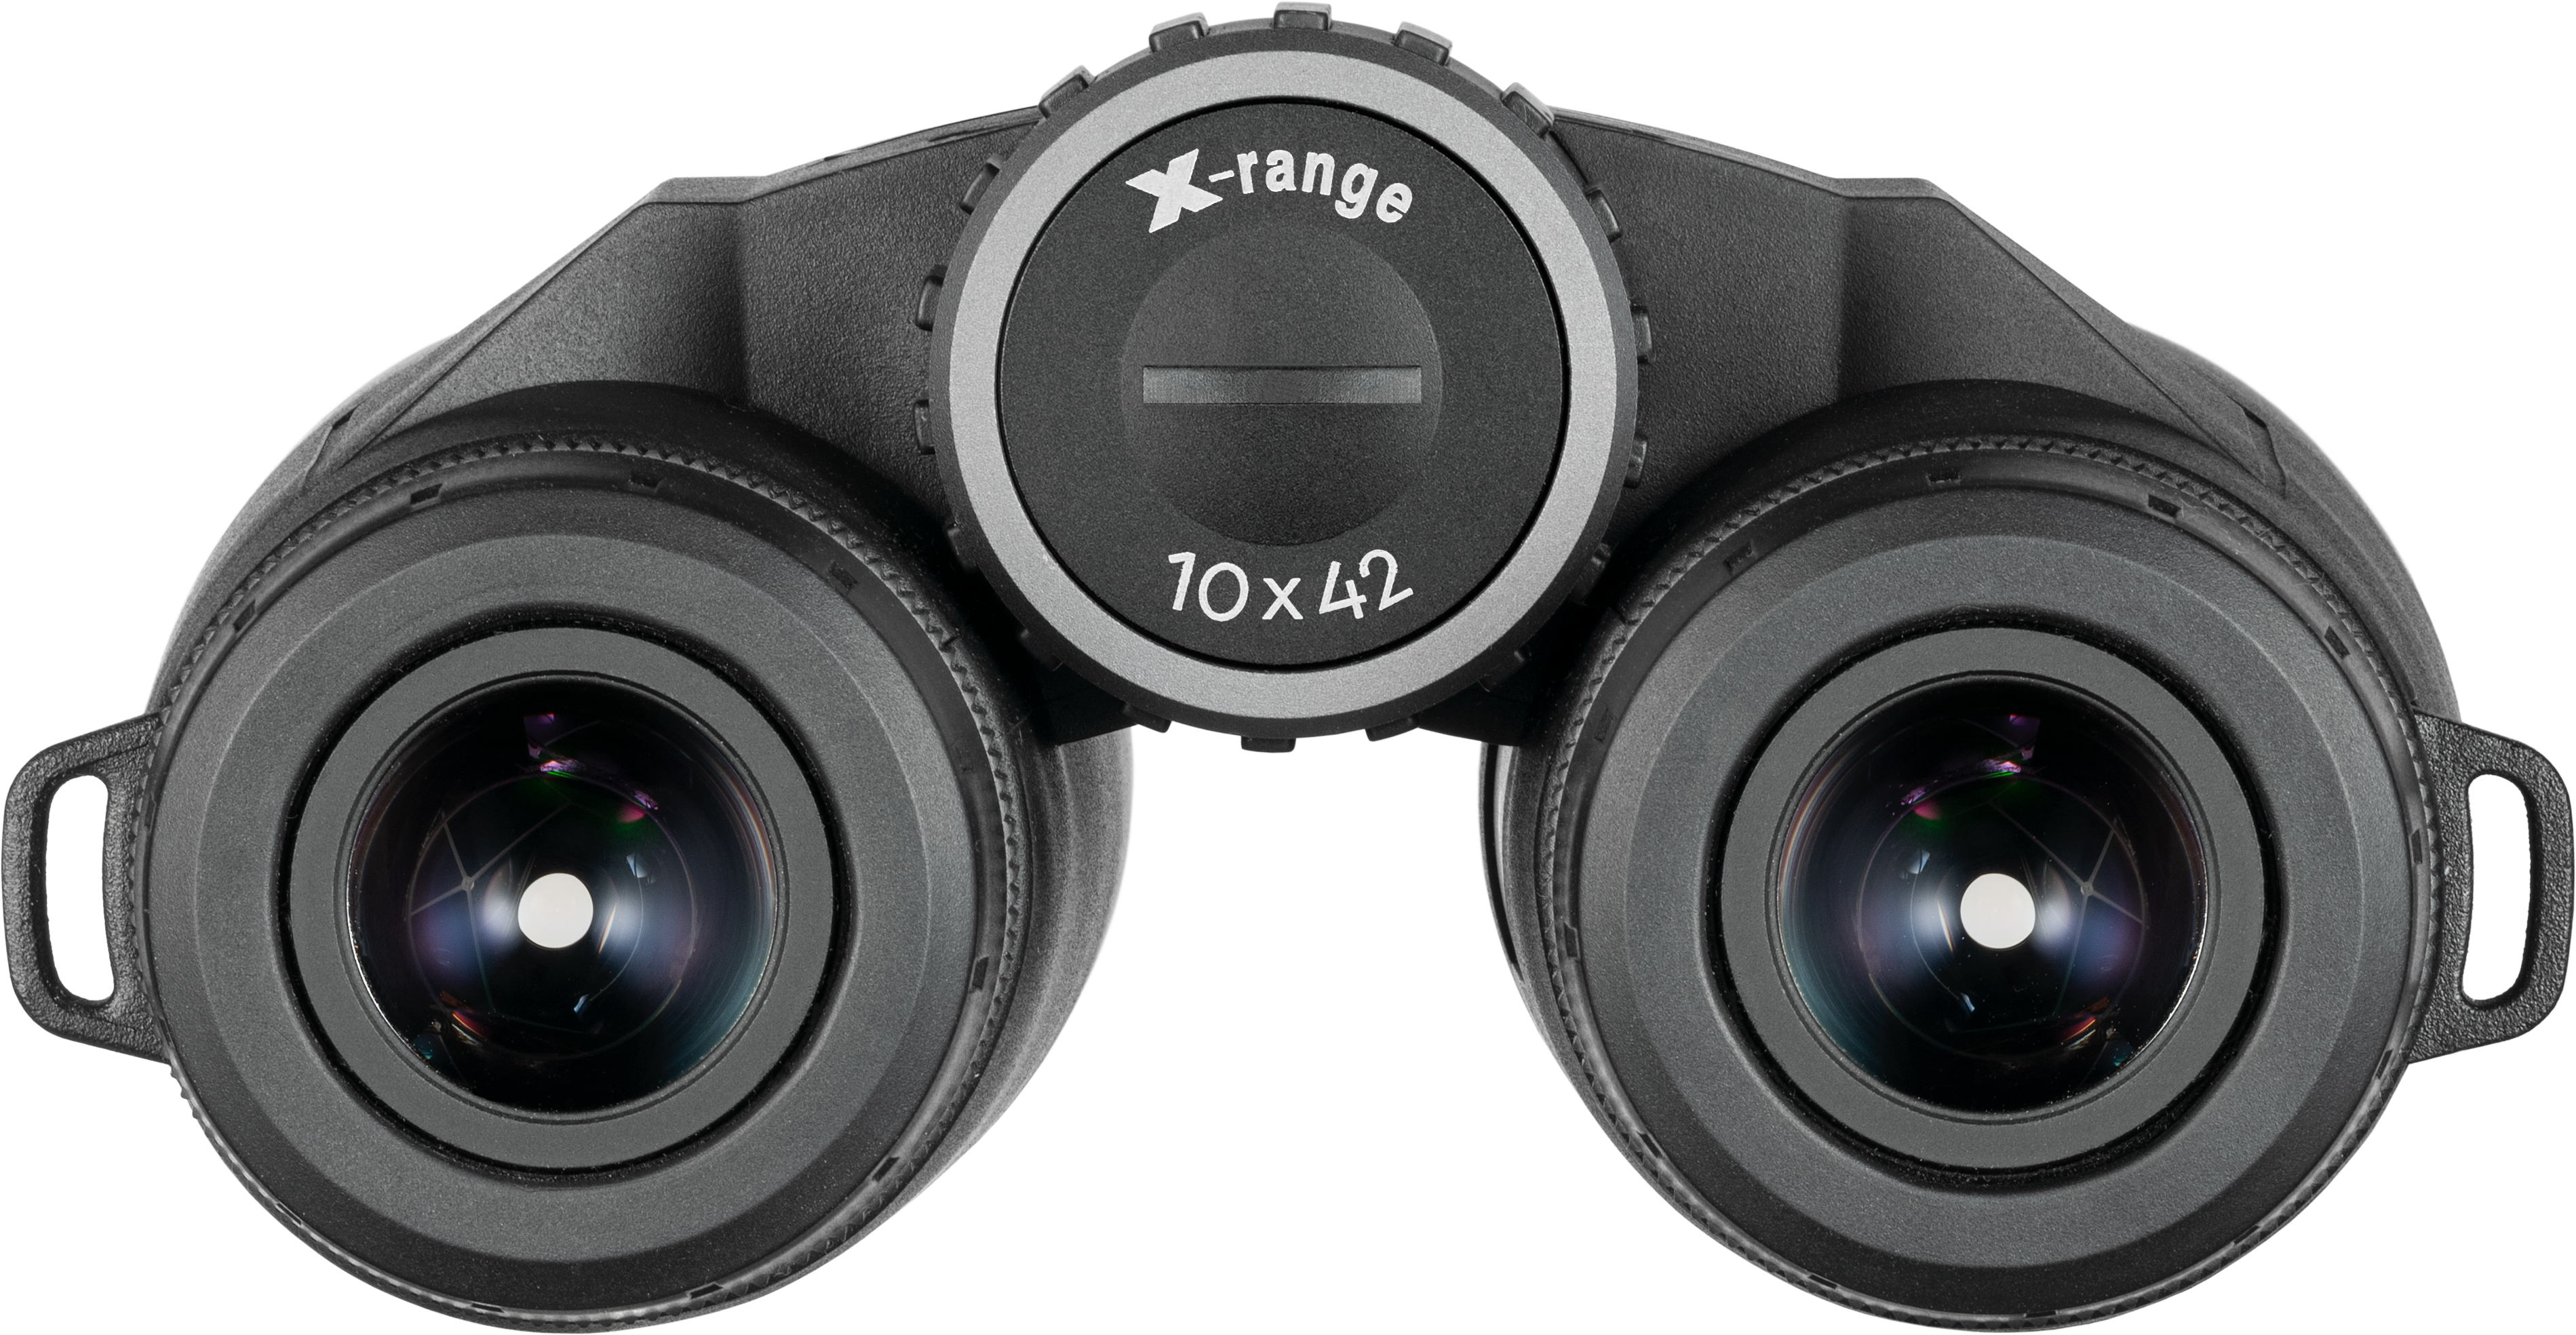 MINOX X-Range 10x42 mit Entfernungsmesser